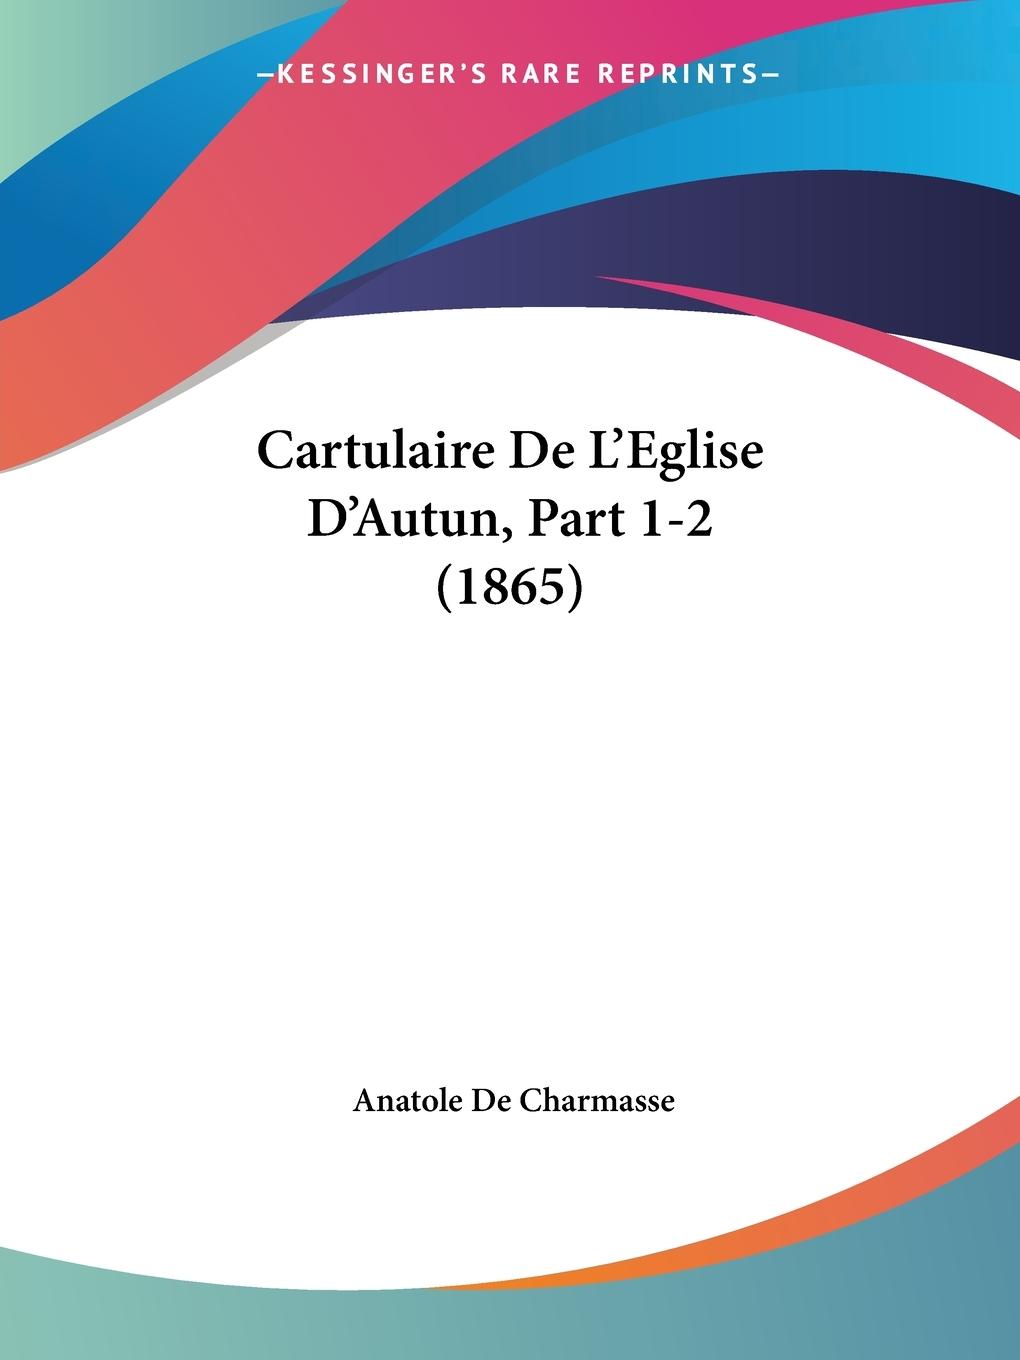 Cartulaire De L Eglise D Autun, Part 1-2 (1865) - De Charmasse, Anatole